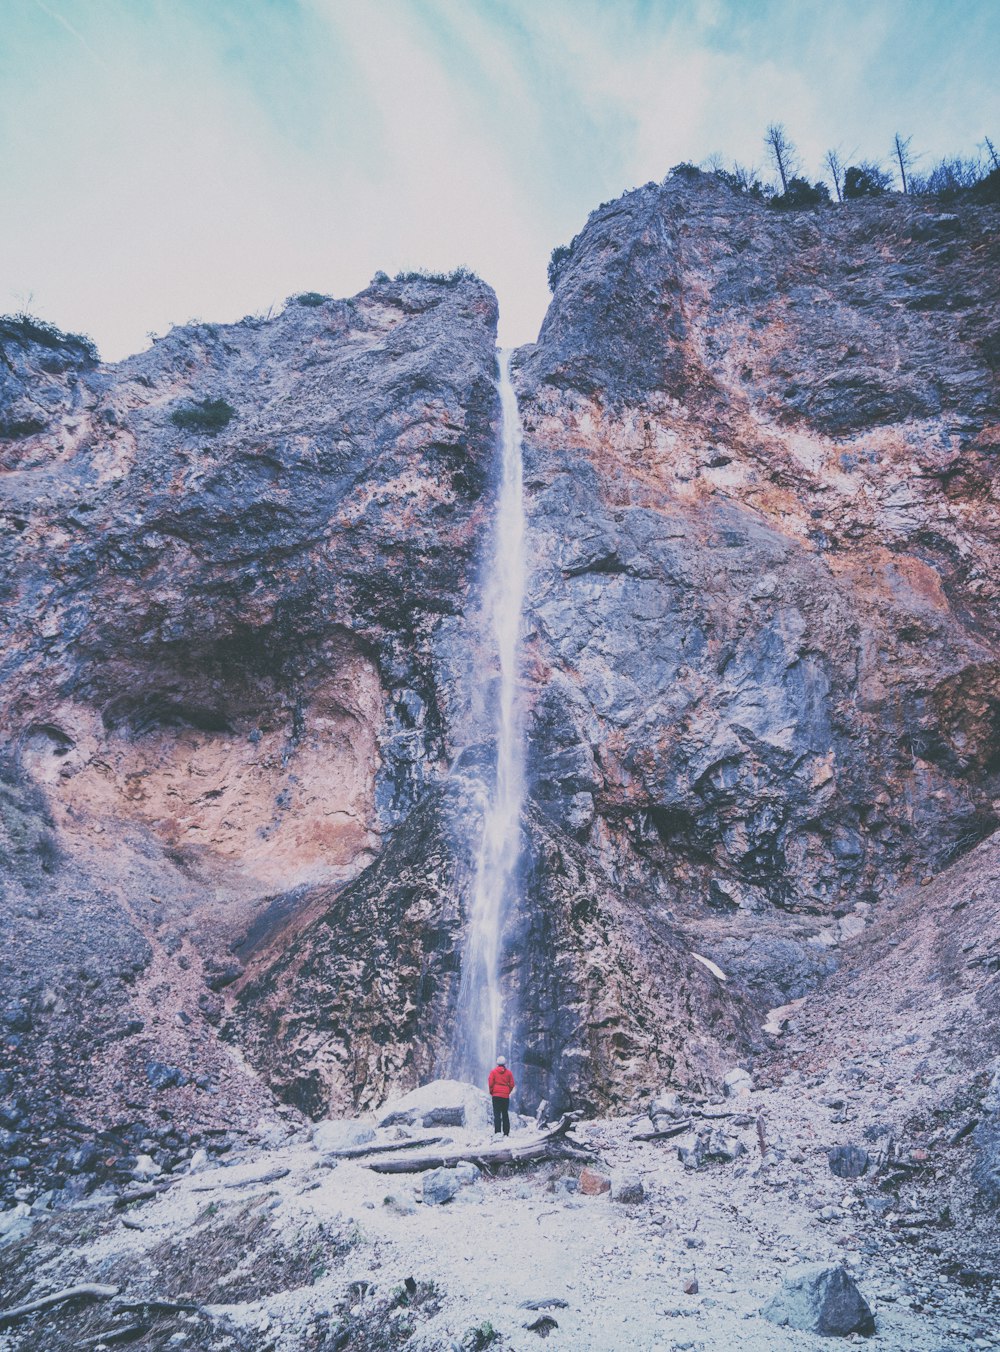 personne portant une veste rouge debout près des chutes d’eau